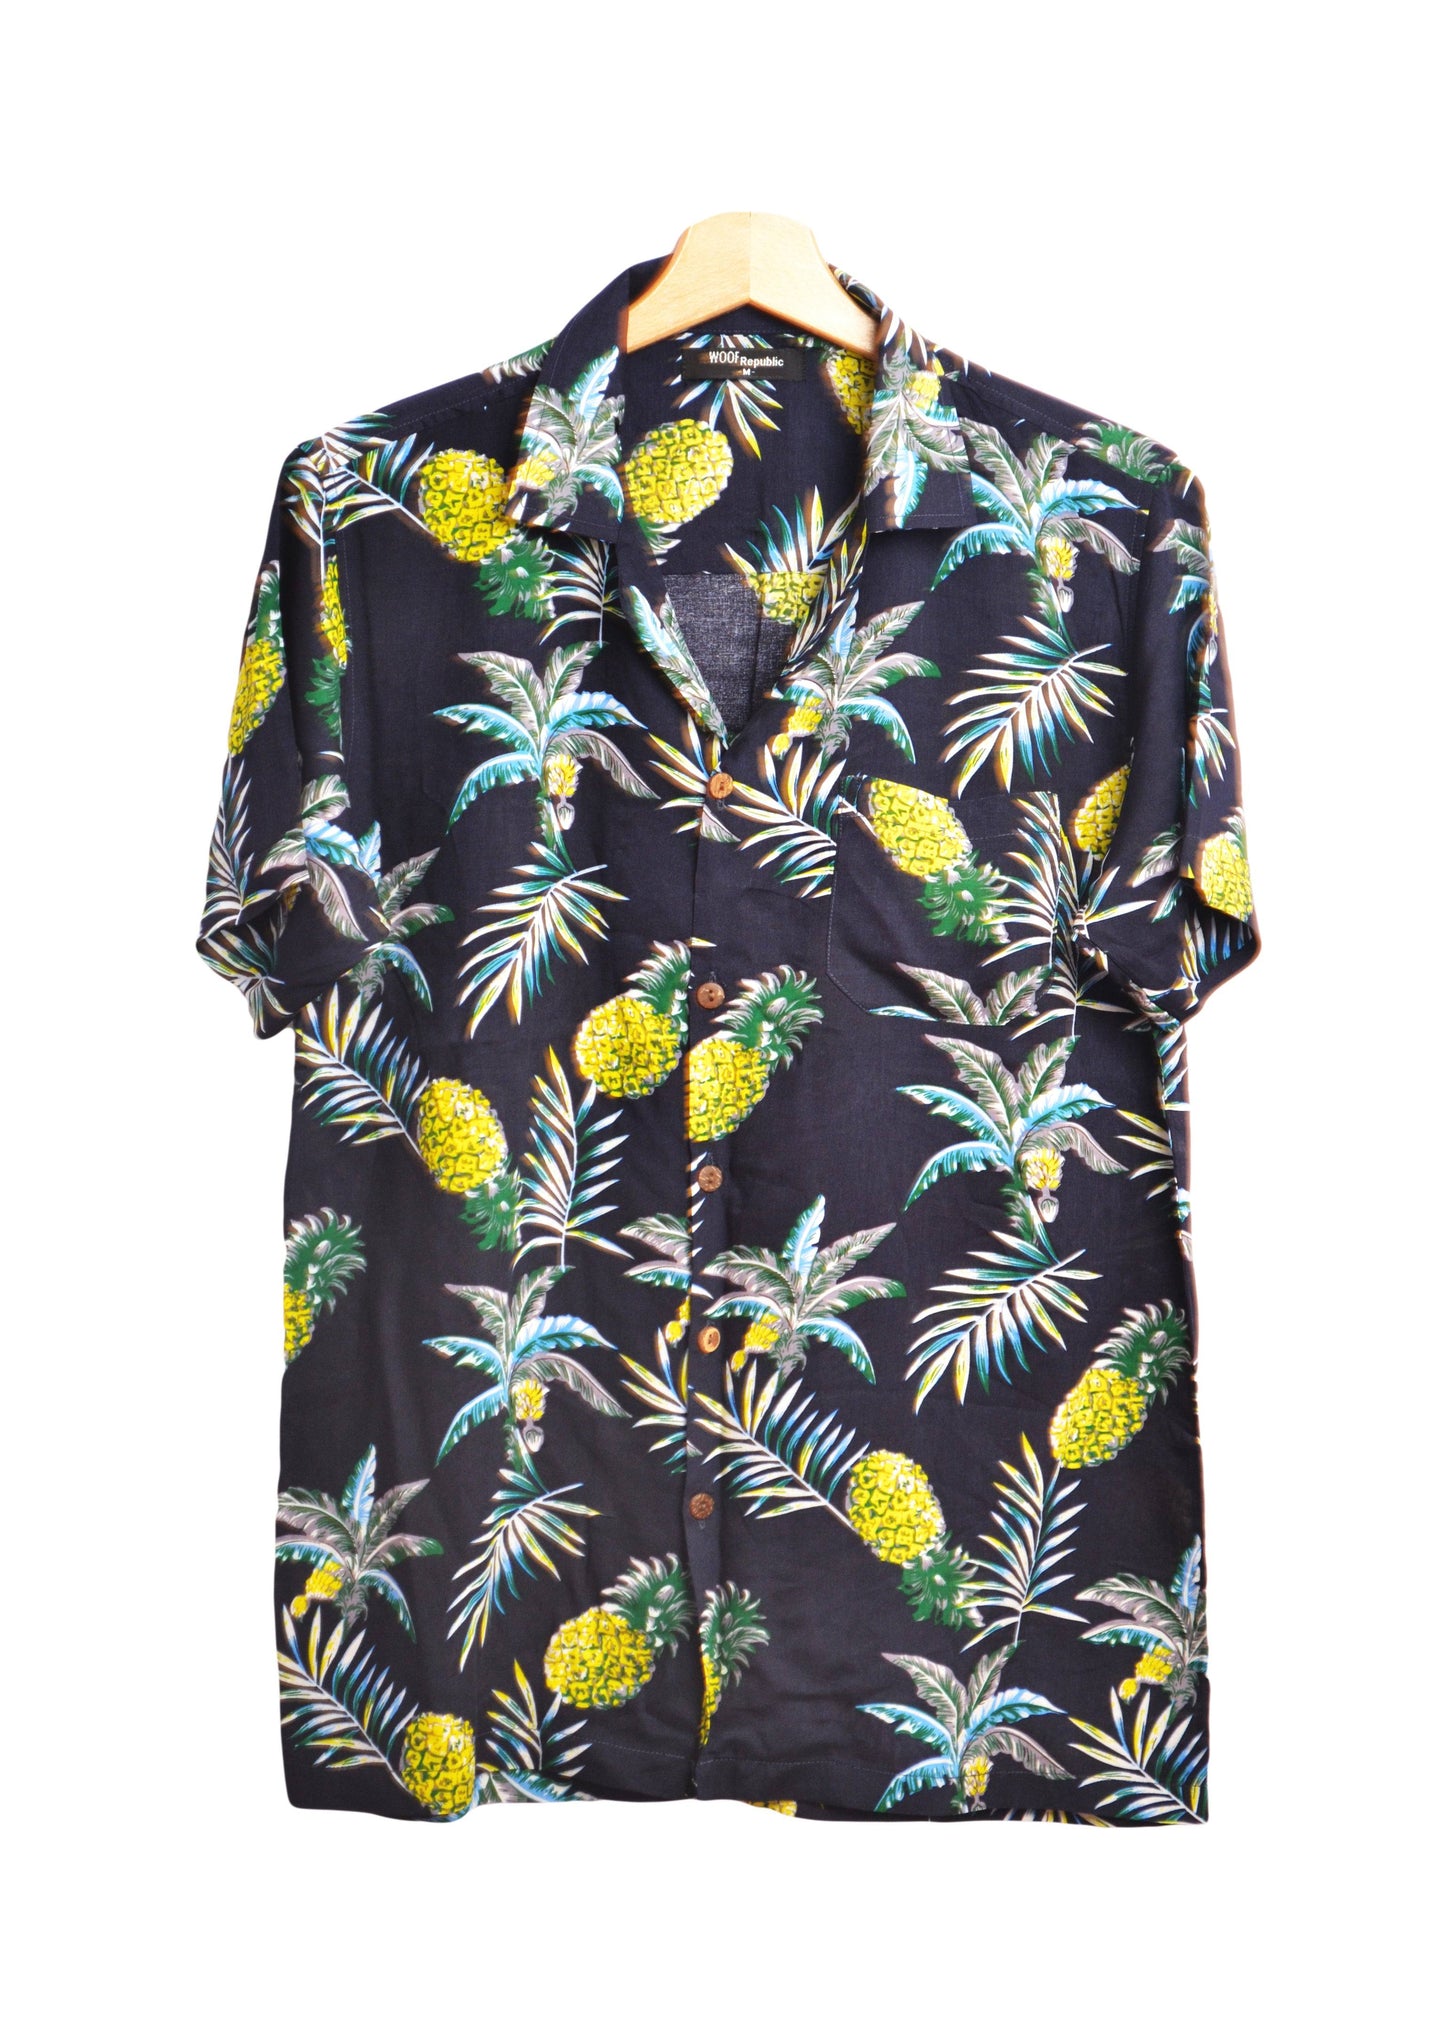 Hawaiian shirt with flowers and pineapple